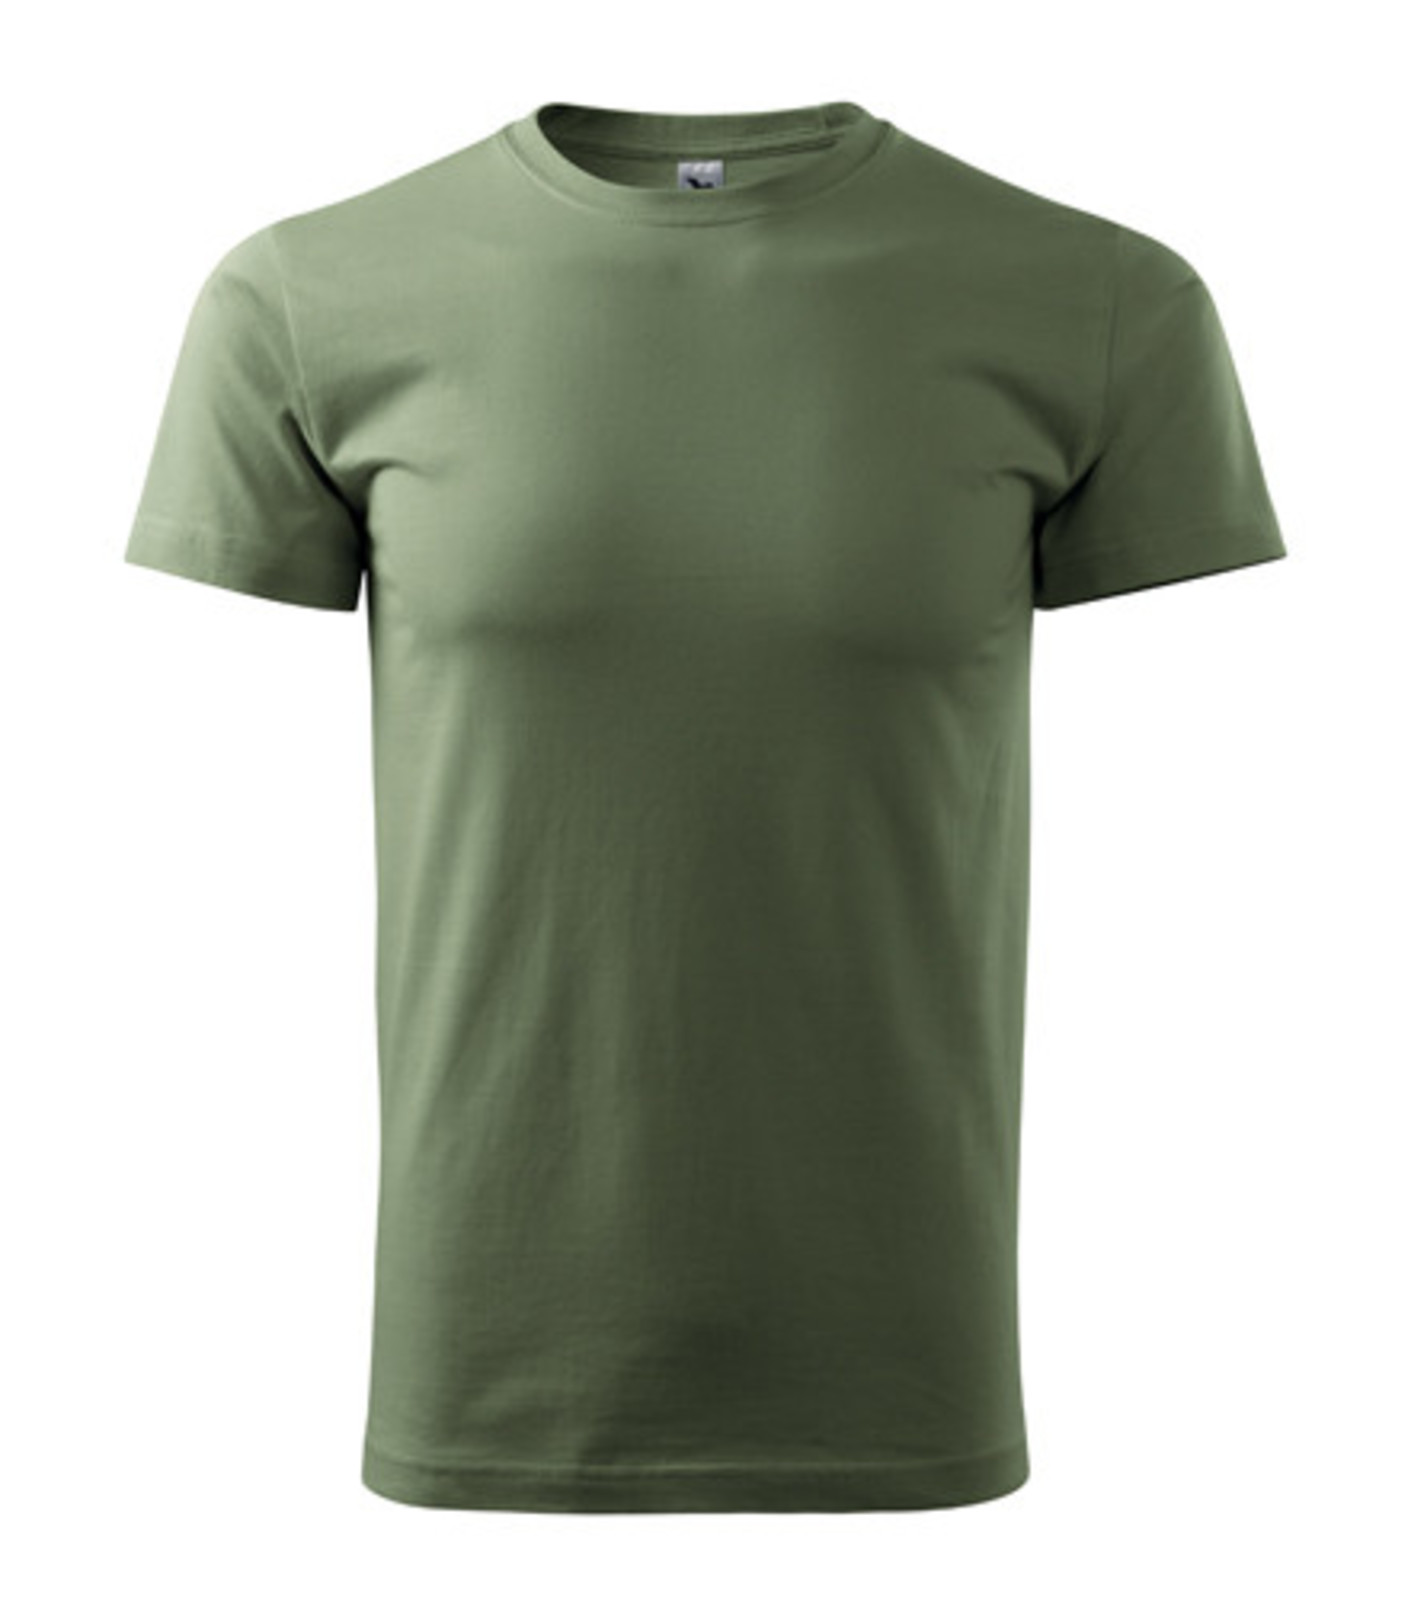 Unisex tričko Malfini Heavy New 137 - veľkosť: S, farba: khaki